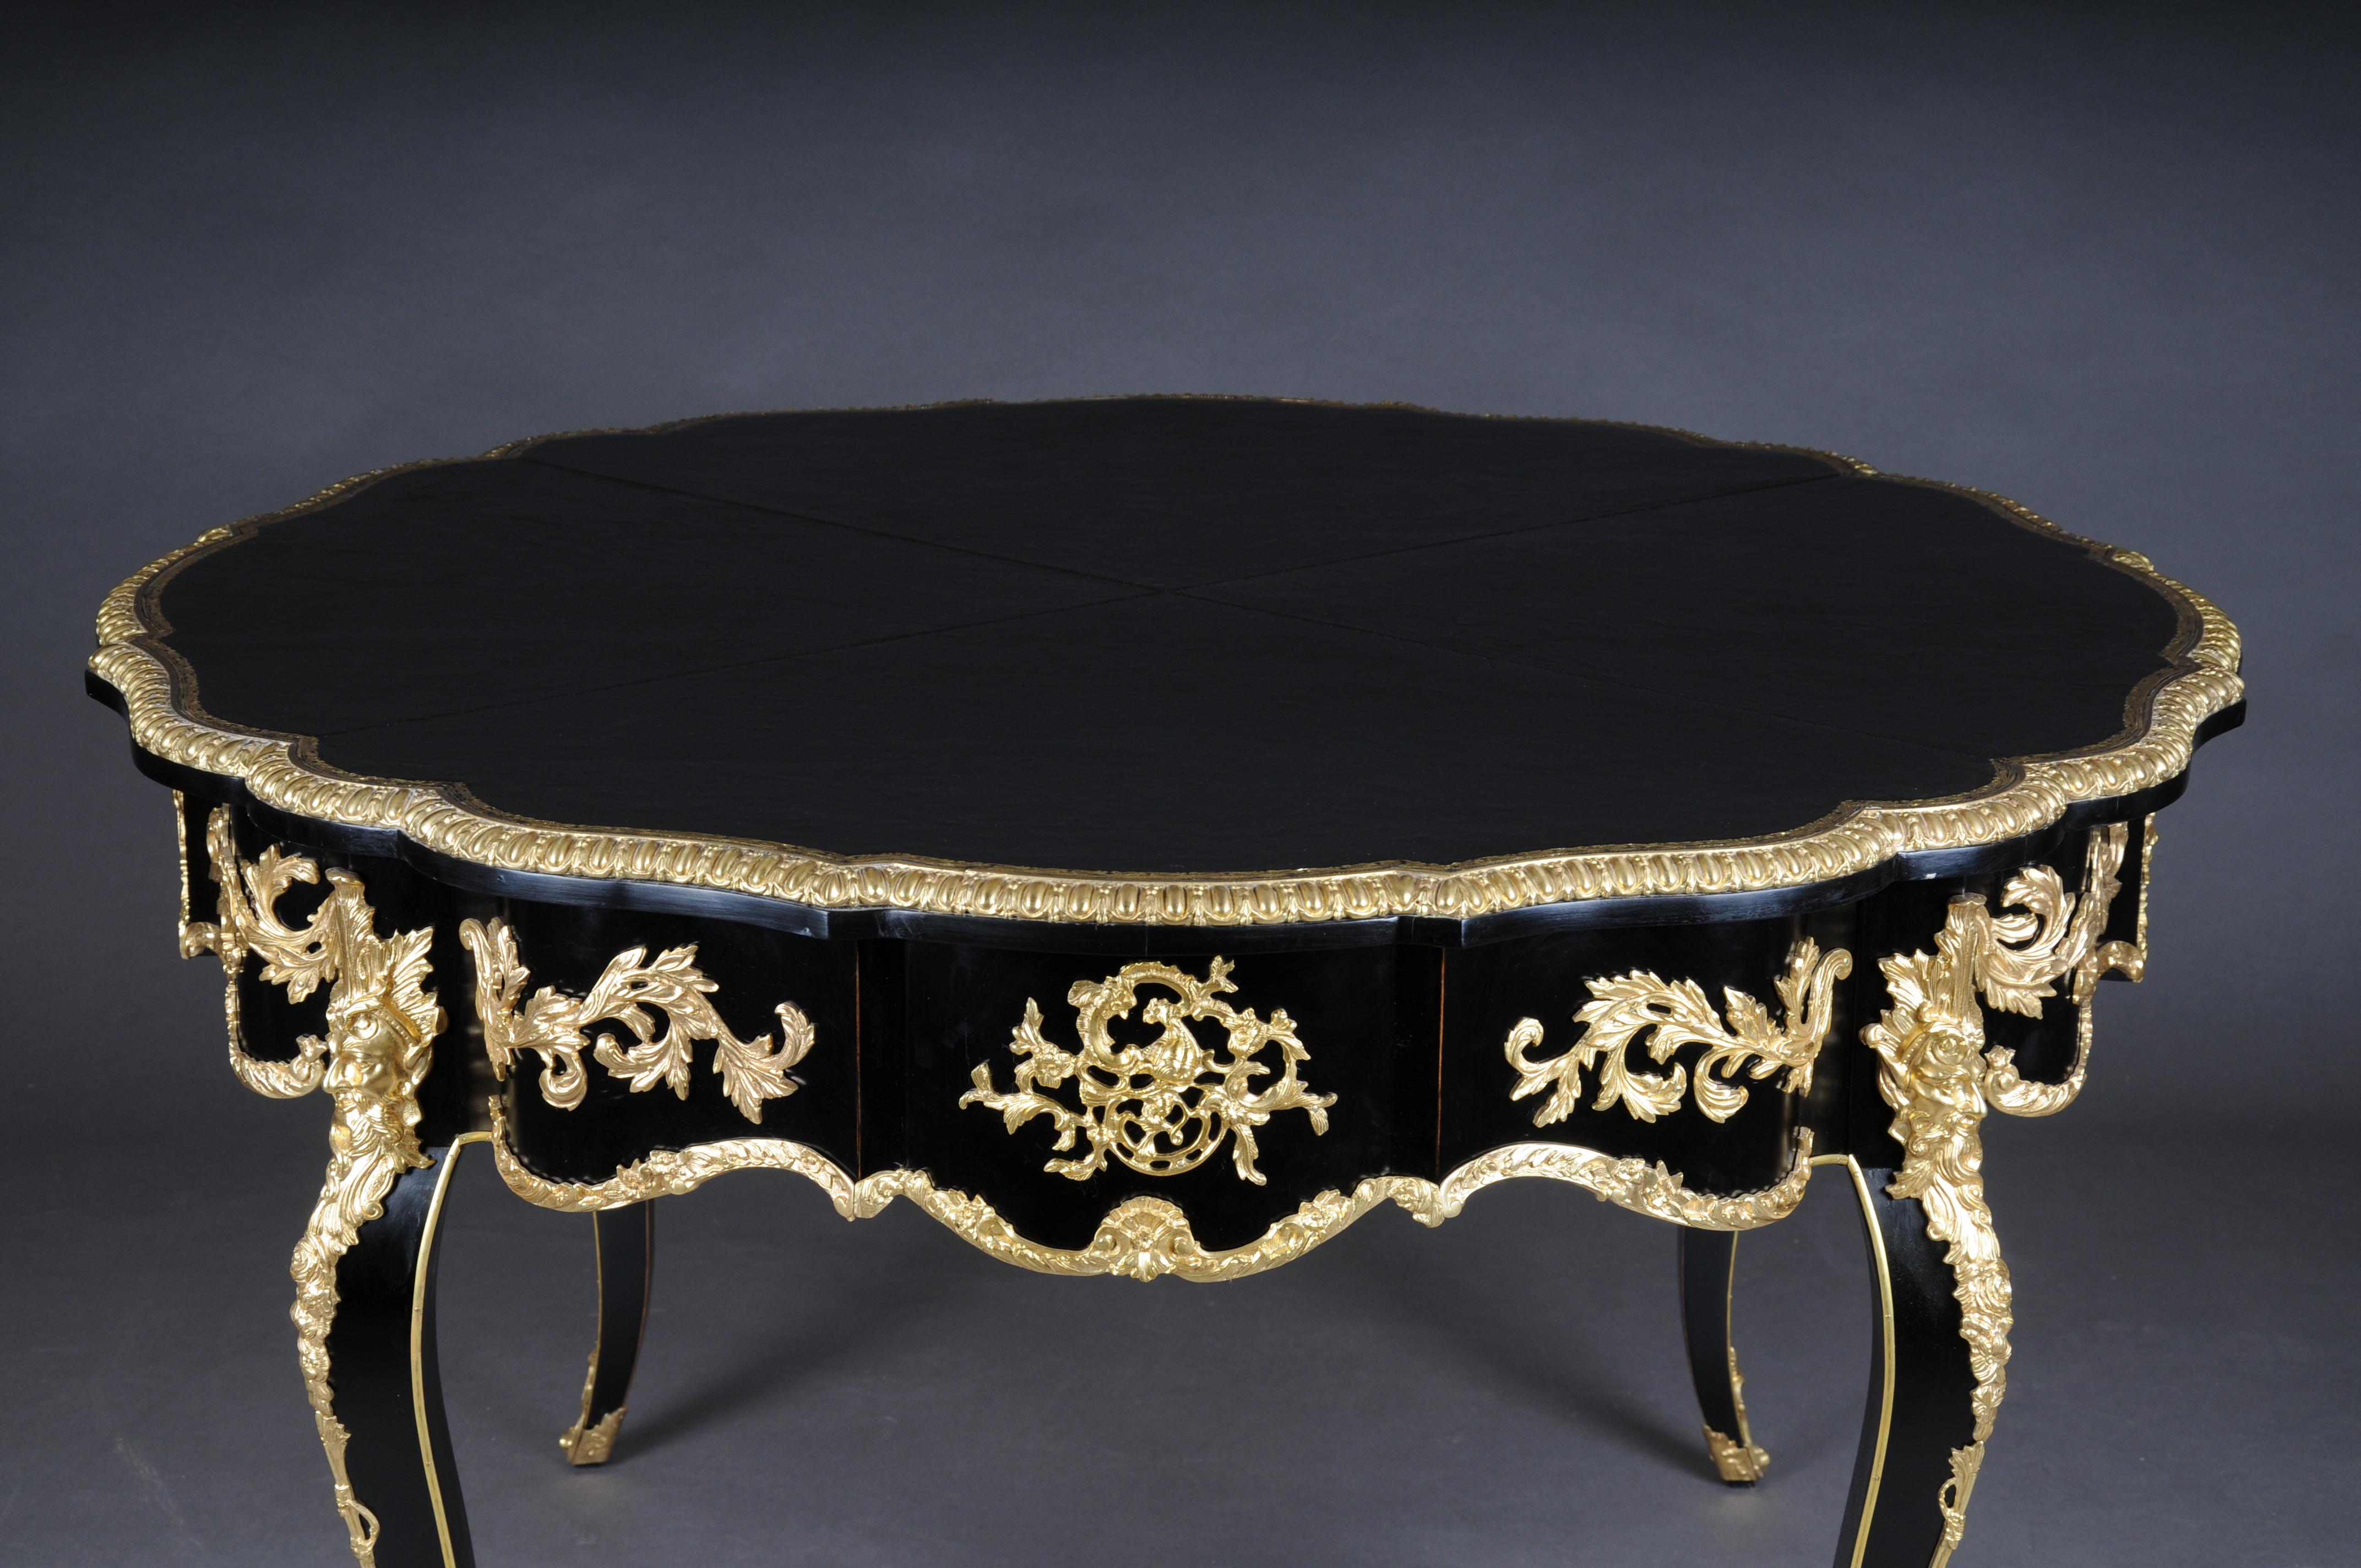 Majestätischer französischer Salontisch im Stil Louis XV des 20. Jahrhunderts, Schwarzgold.

Tischplatte aus feinstem Echtleder mit Goldprägung.
Tisch aus massiver Buche, geriffelt. Sehr reiche vergoldete Bronzebeschläge. Couchtisch mit einer